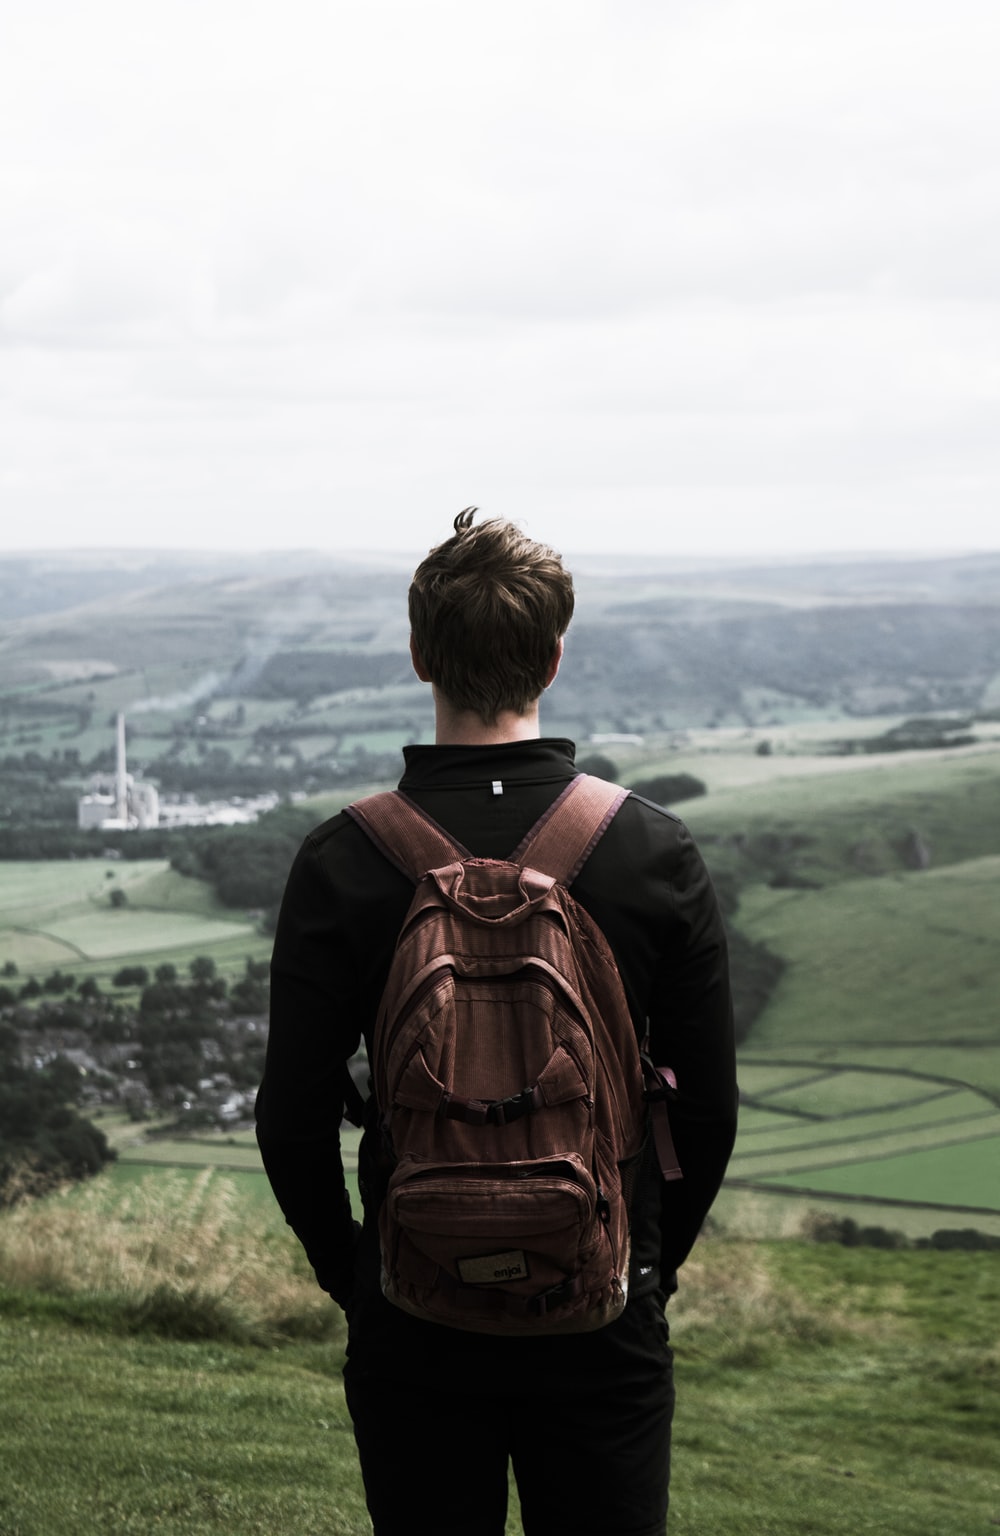 Hình ảnh của một người đàn ông trẻ nhìn ra núi